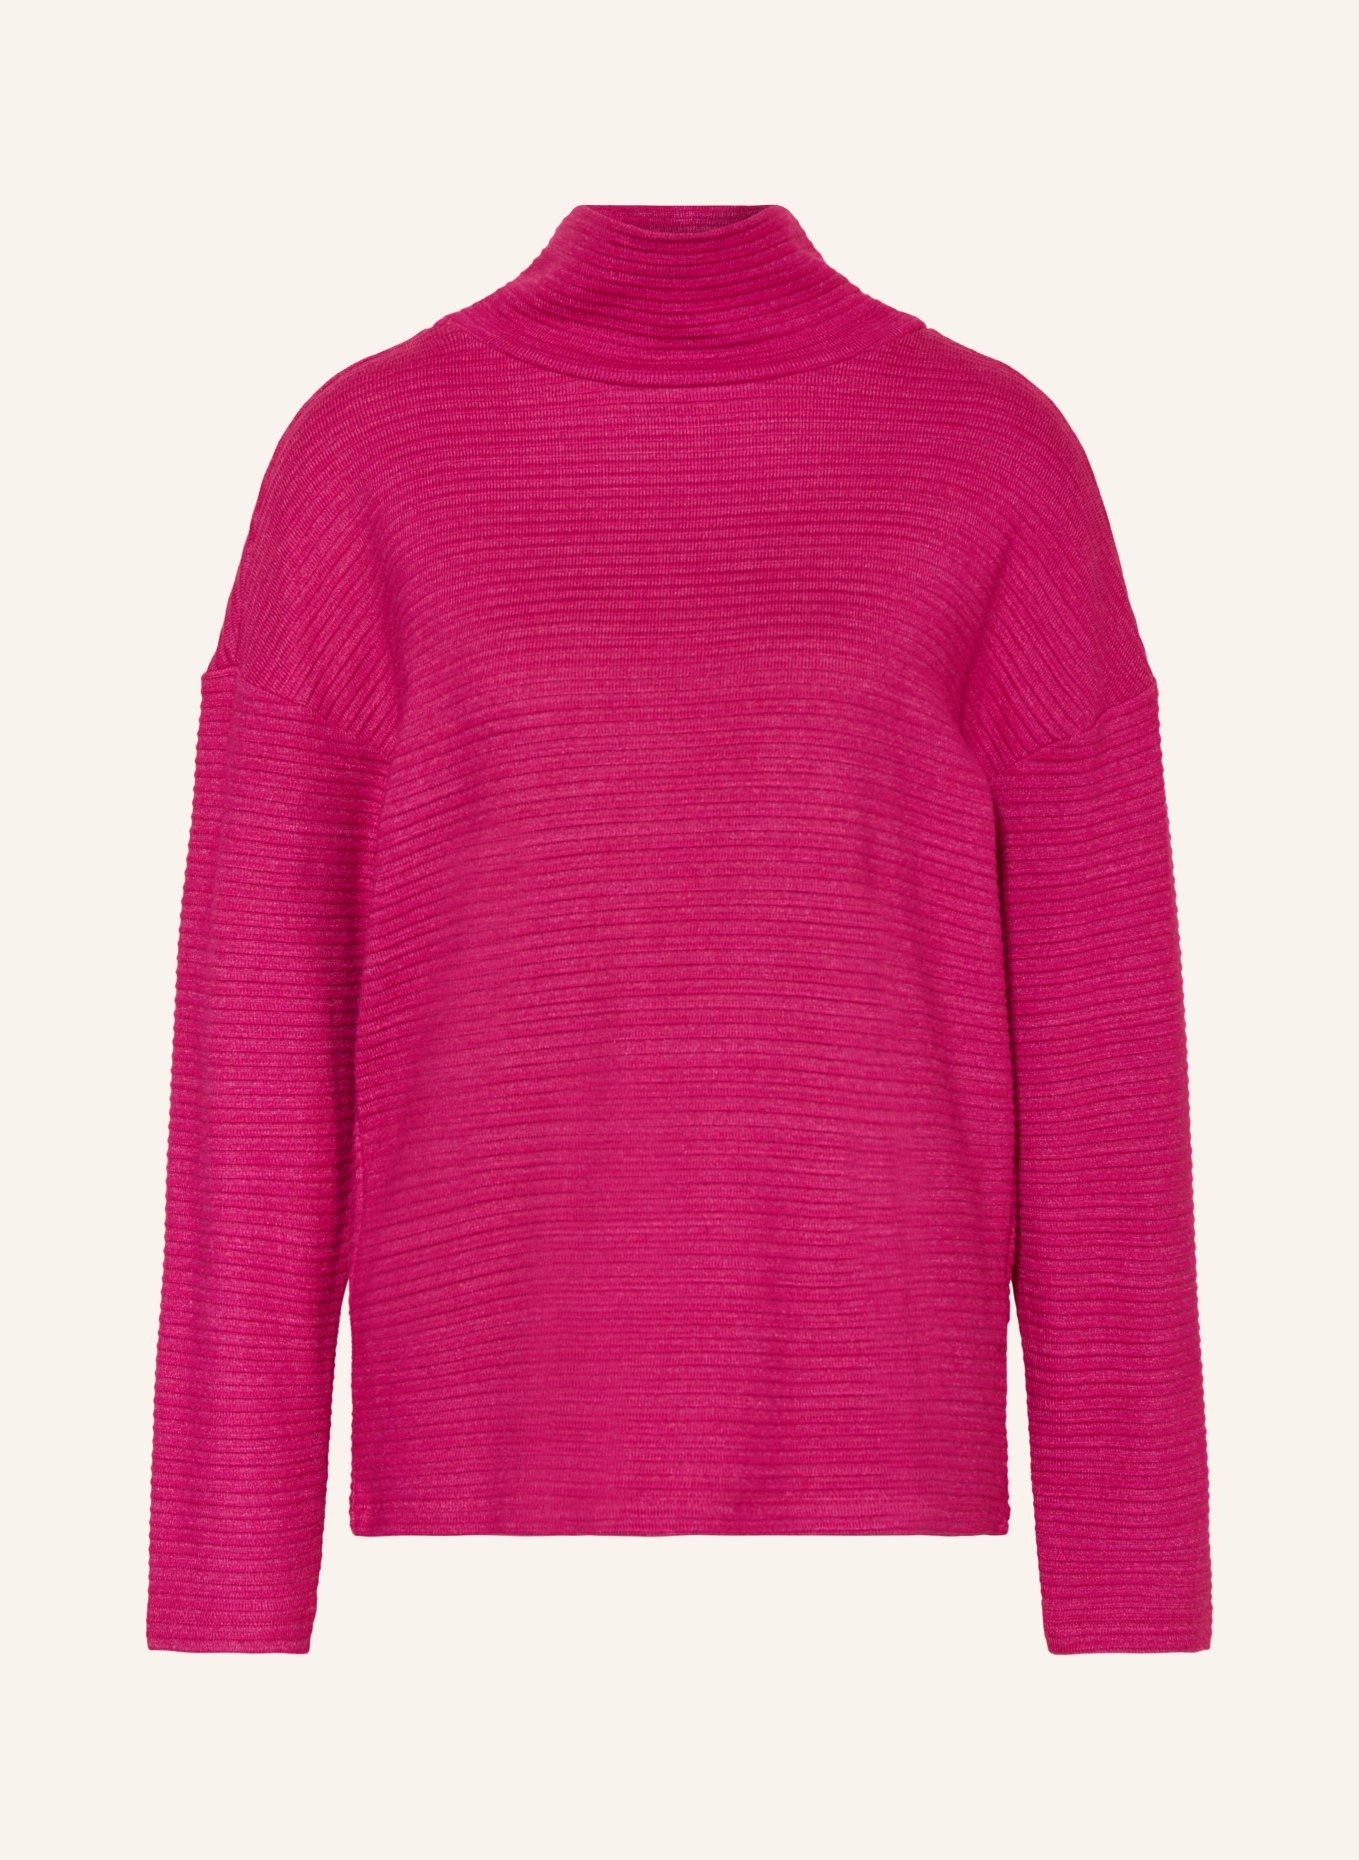 CARTOON Pullover, Farbe: FUCHSIA (Bild 1)